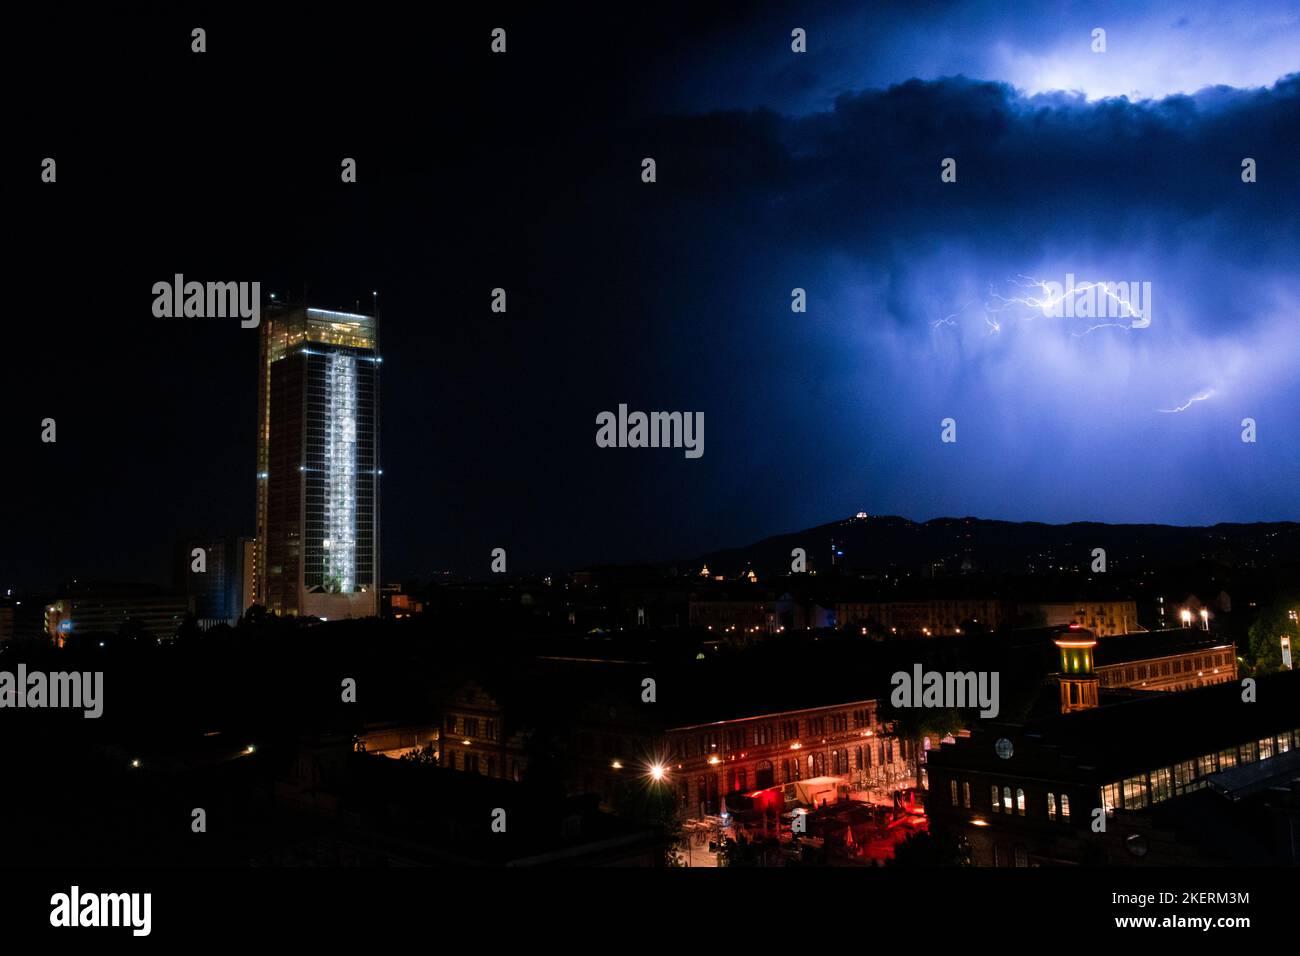 Ein aufregender Blitzschlag erschien über der Stadt Turin Stockfoto